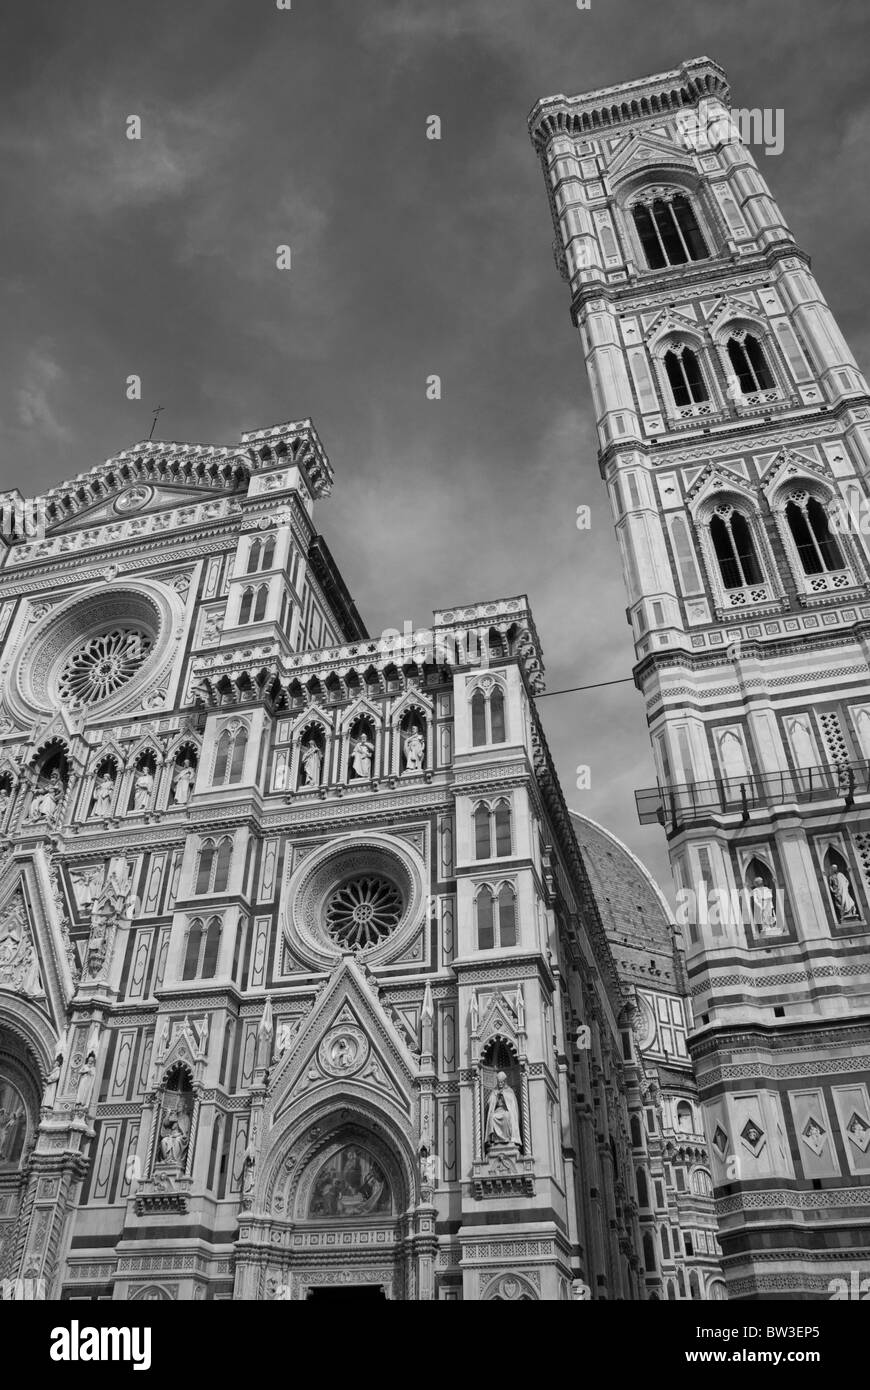 Détail architectural de la Piazza del Duomo à Florence, Italie Banque D'Images